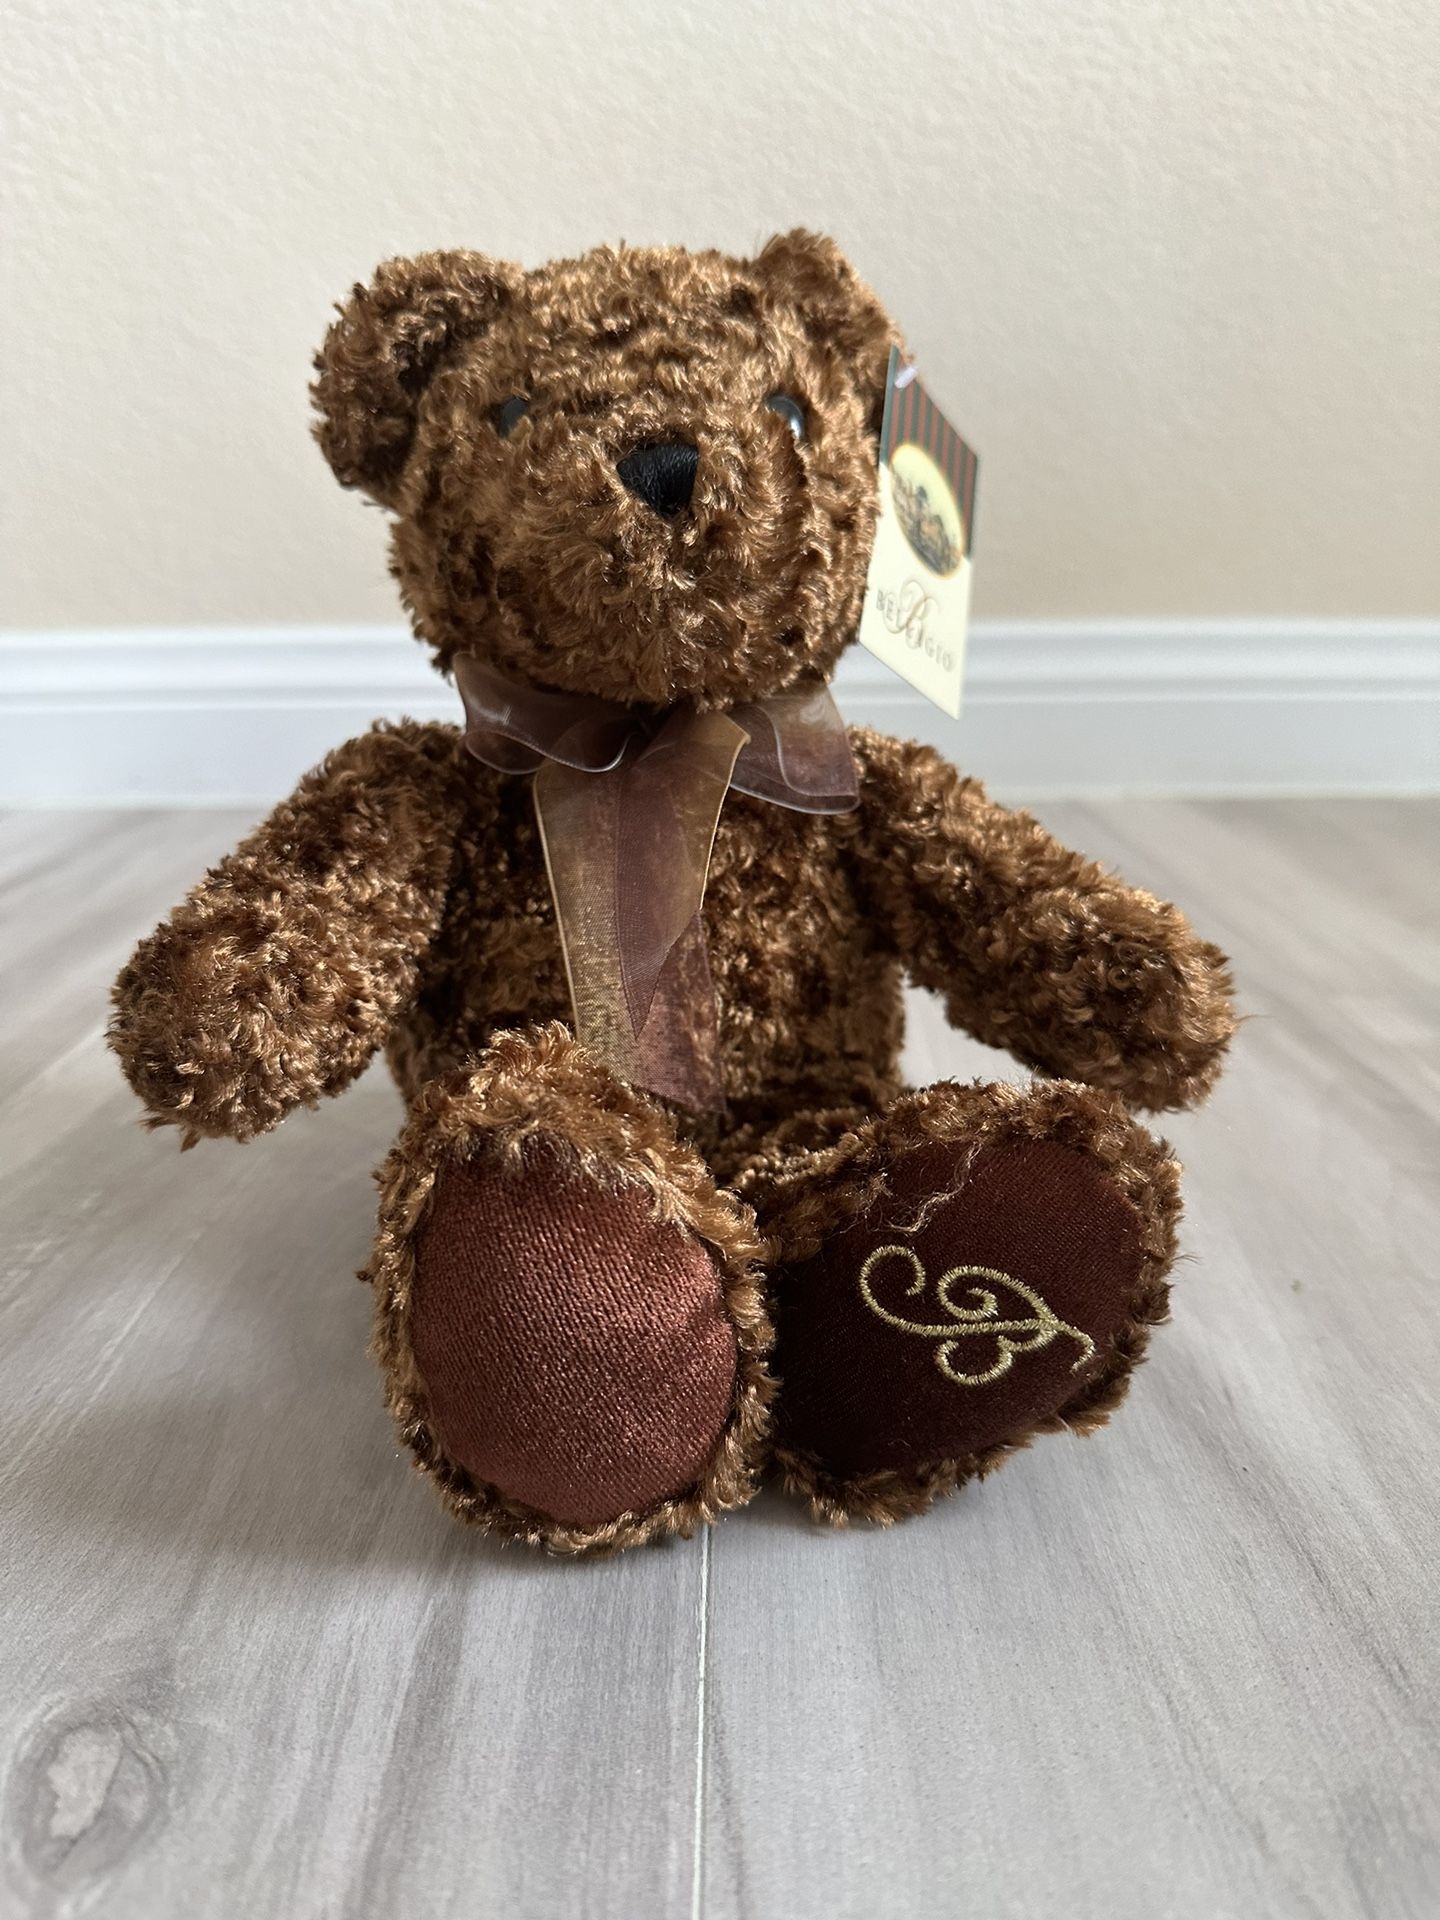 Teddy Bear / Bellagio Bear 